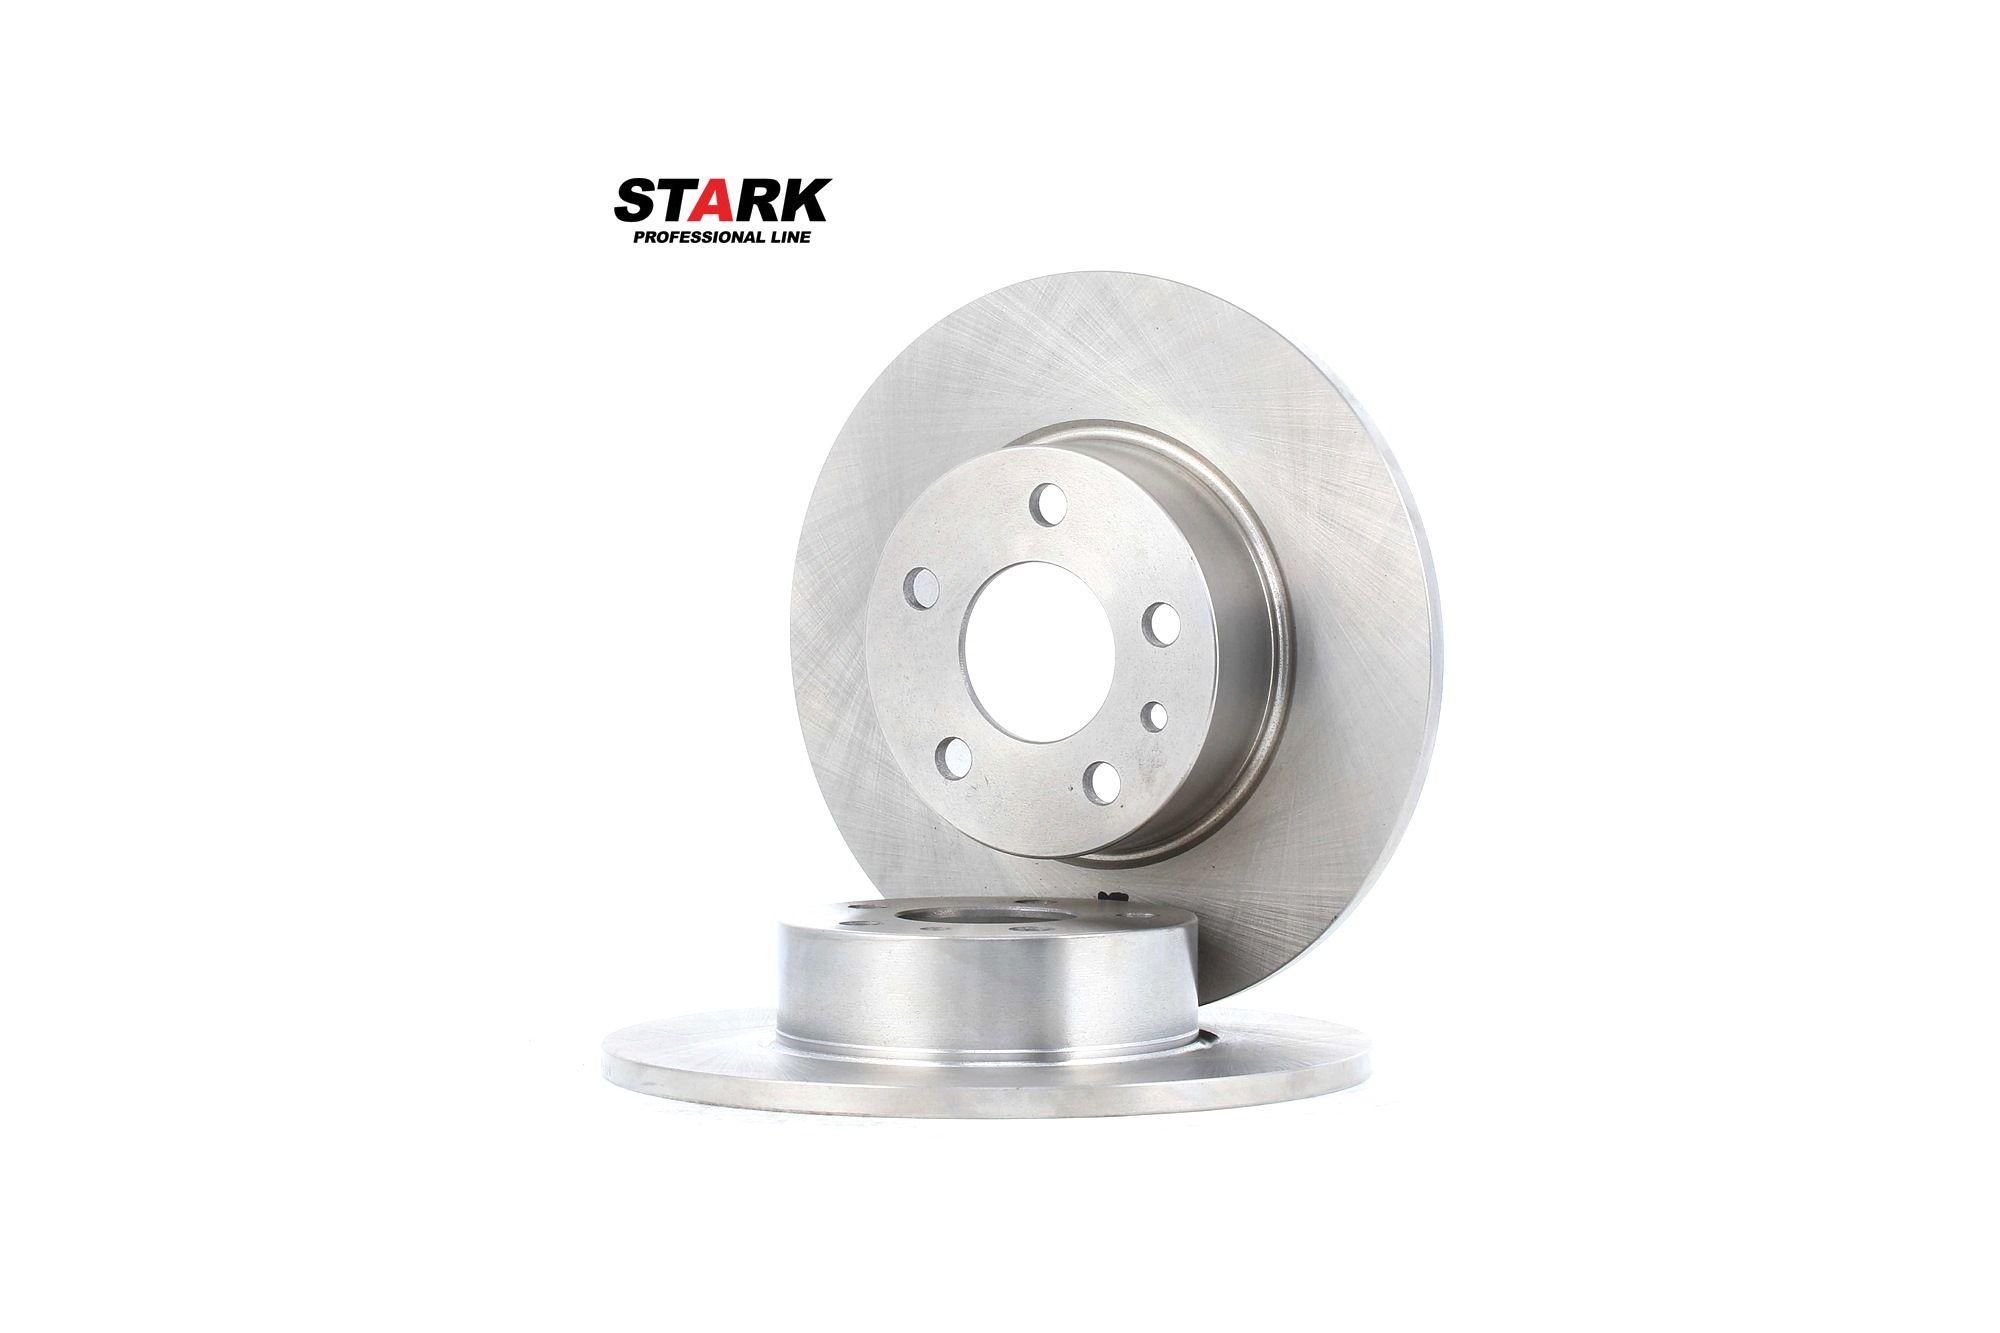 Comprare SKBD-0020055 STARK Assale posteriore, senza viti/bulloni Ø: 251mm, Ø: 251mm, Spessore disco freno: 10mm Disco freno SKBD-0020055 poco costoso